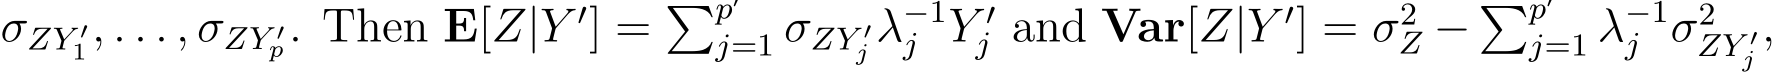  σZY ′1, . . . , σZY ′p. Then E[Z|Y ′] = �p′j=1 σZY ′j λ−1j Y ′j and Var[Z|Y ′] = σ2Z − �p′j=1 λ−1j σ2ZY ′j ,